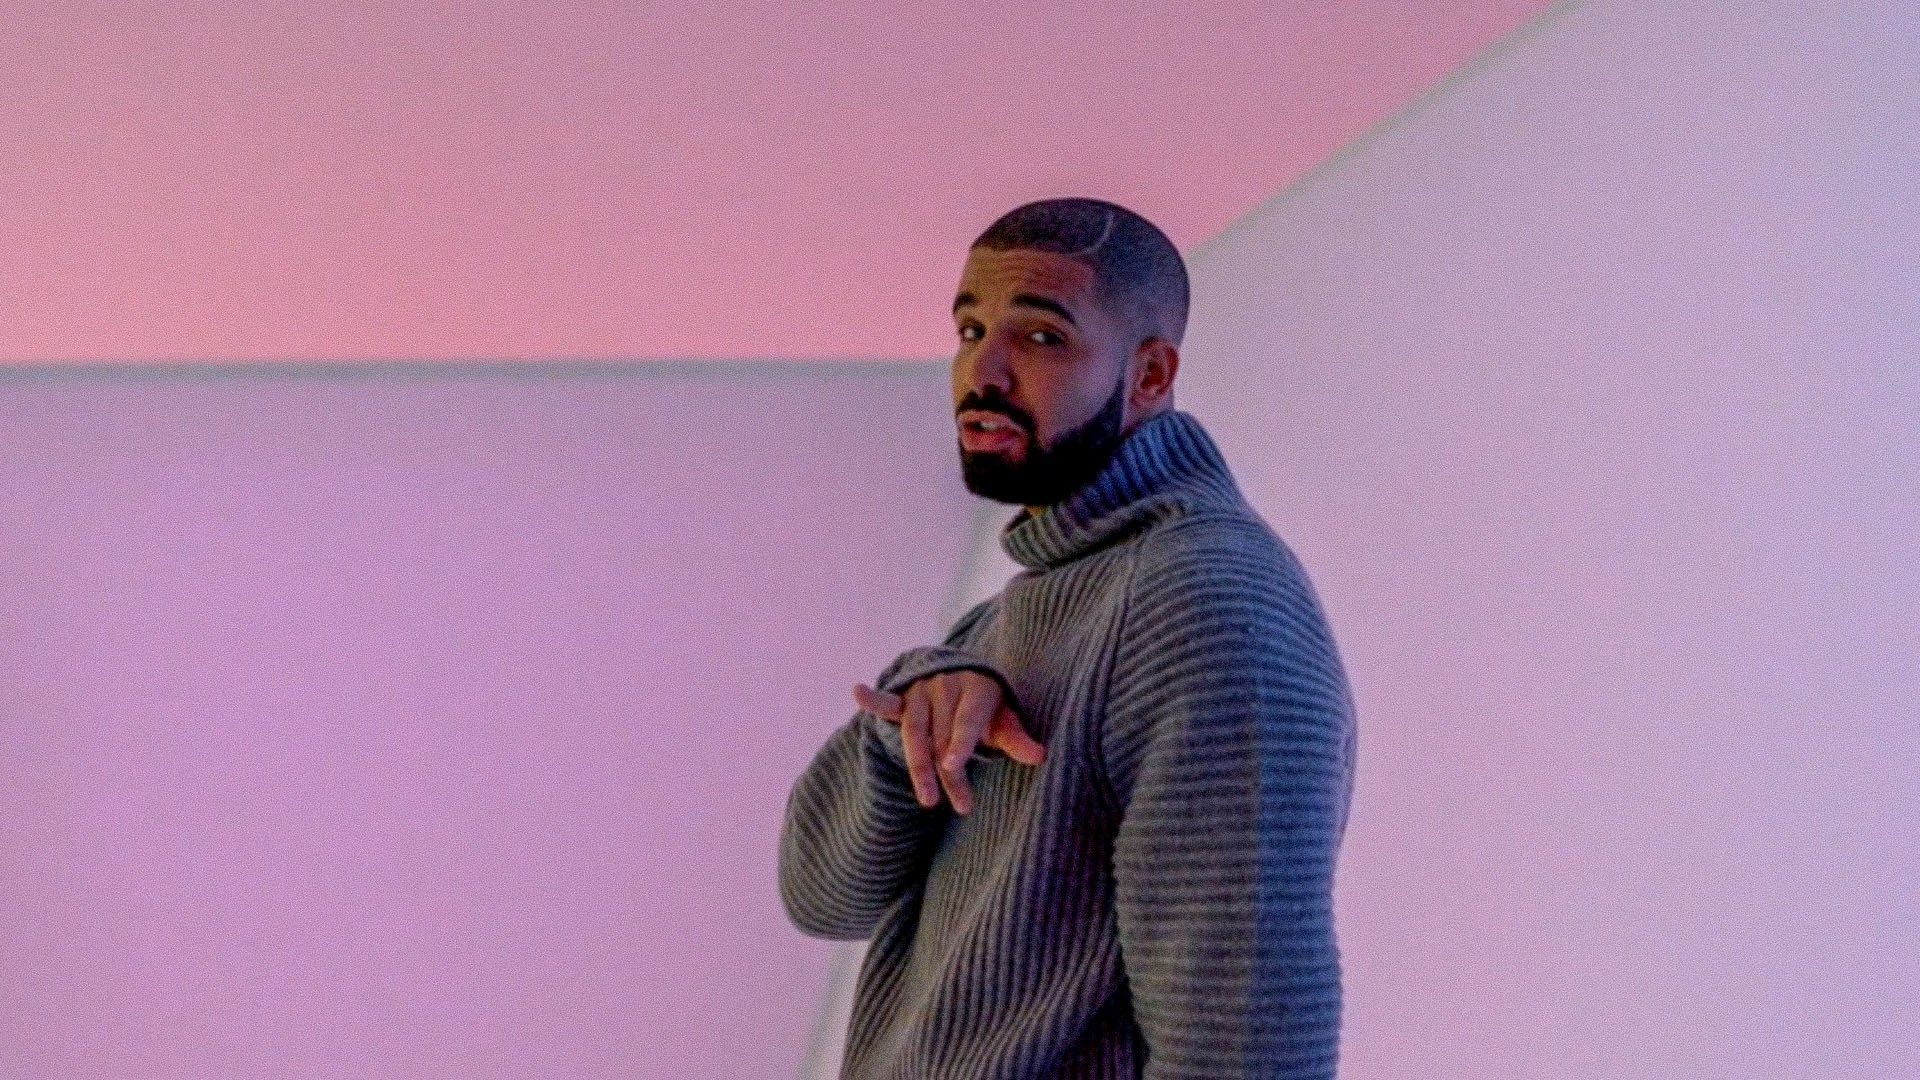 Drake 2015 Hotline Bling Wallpaper Free Drake 2015 Hotline